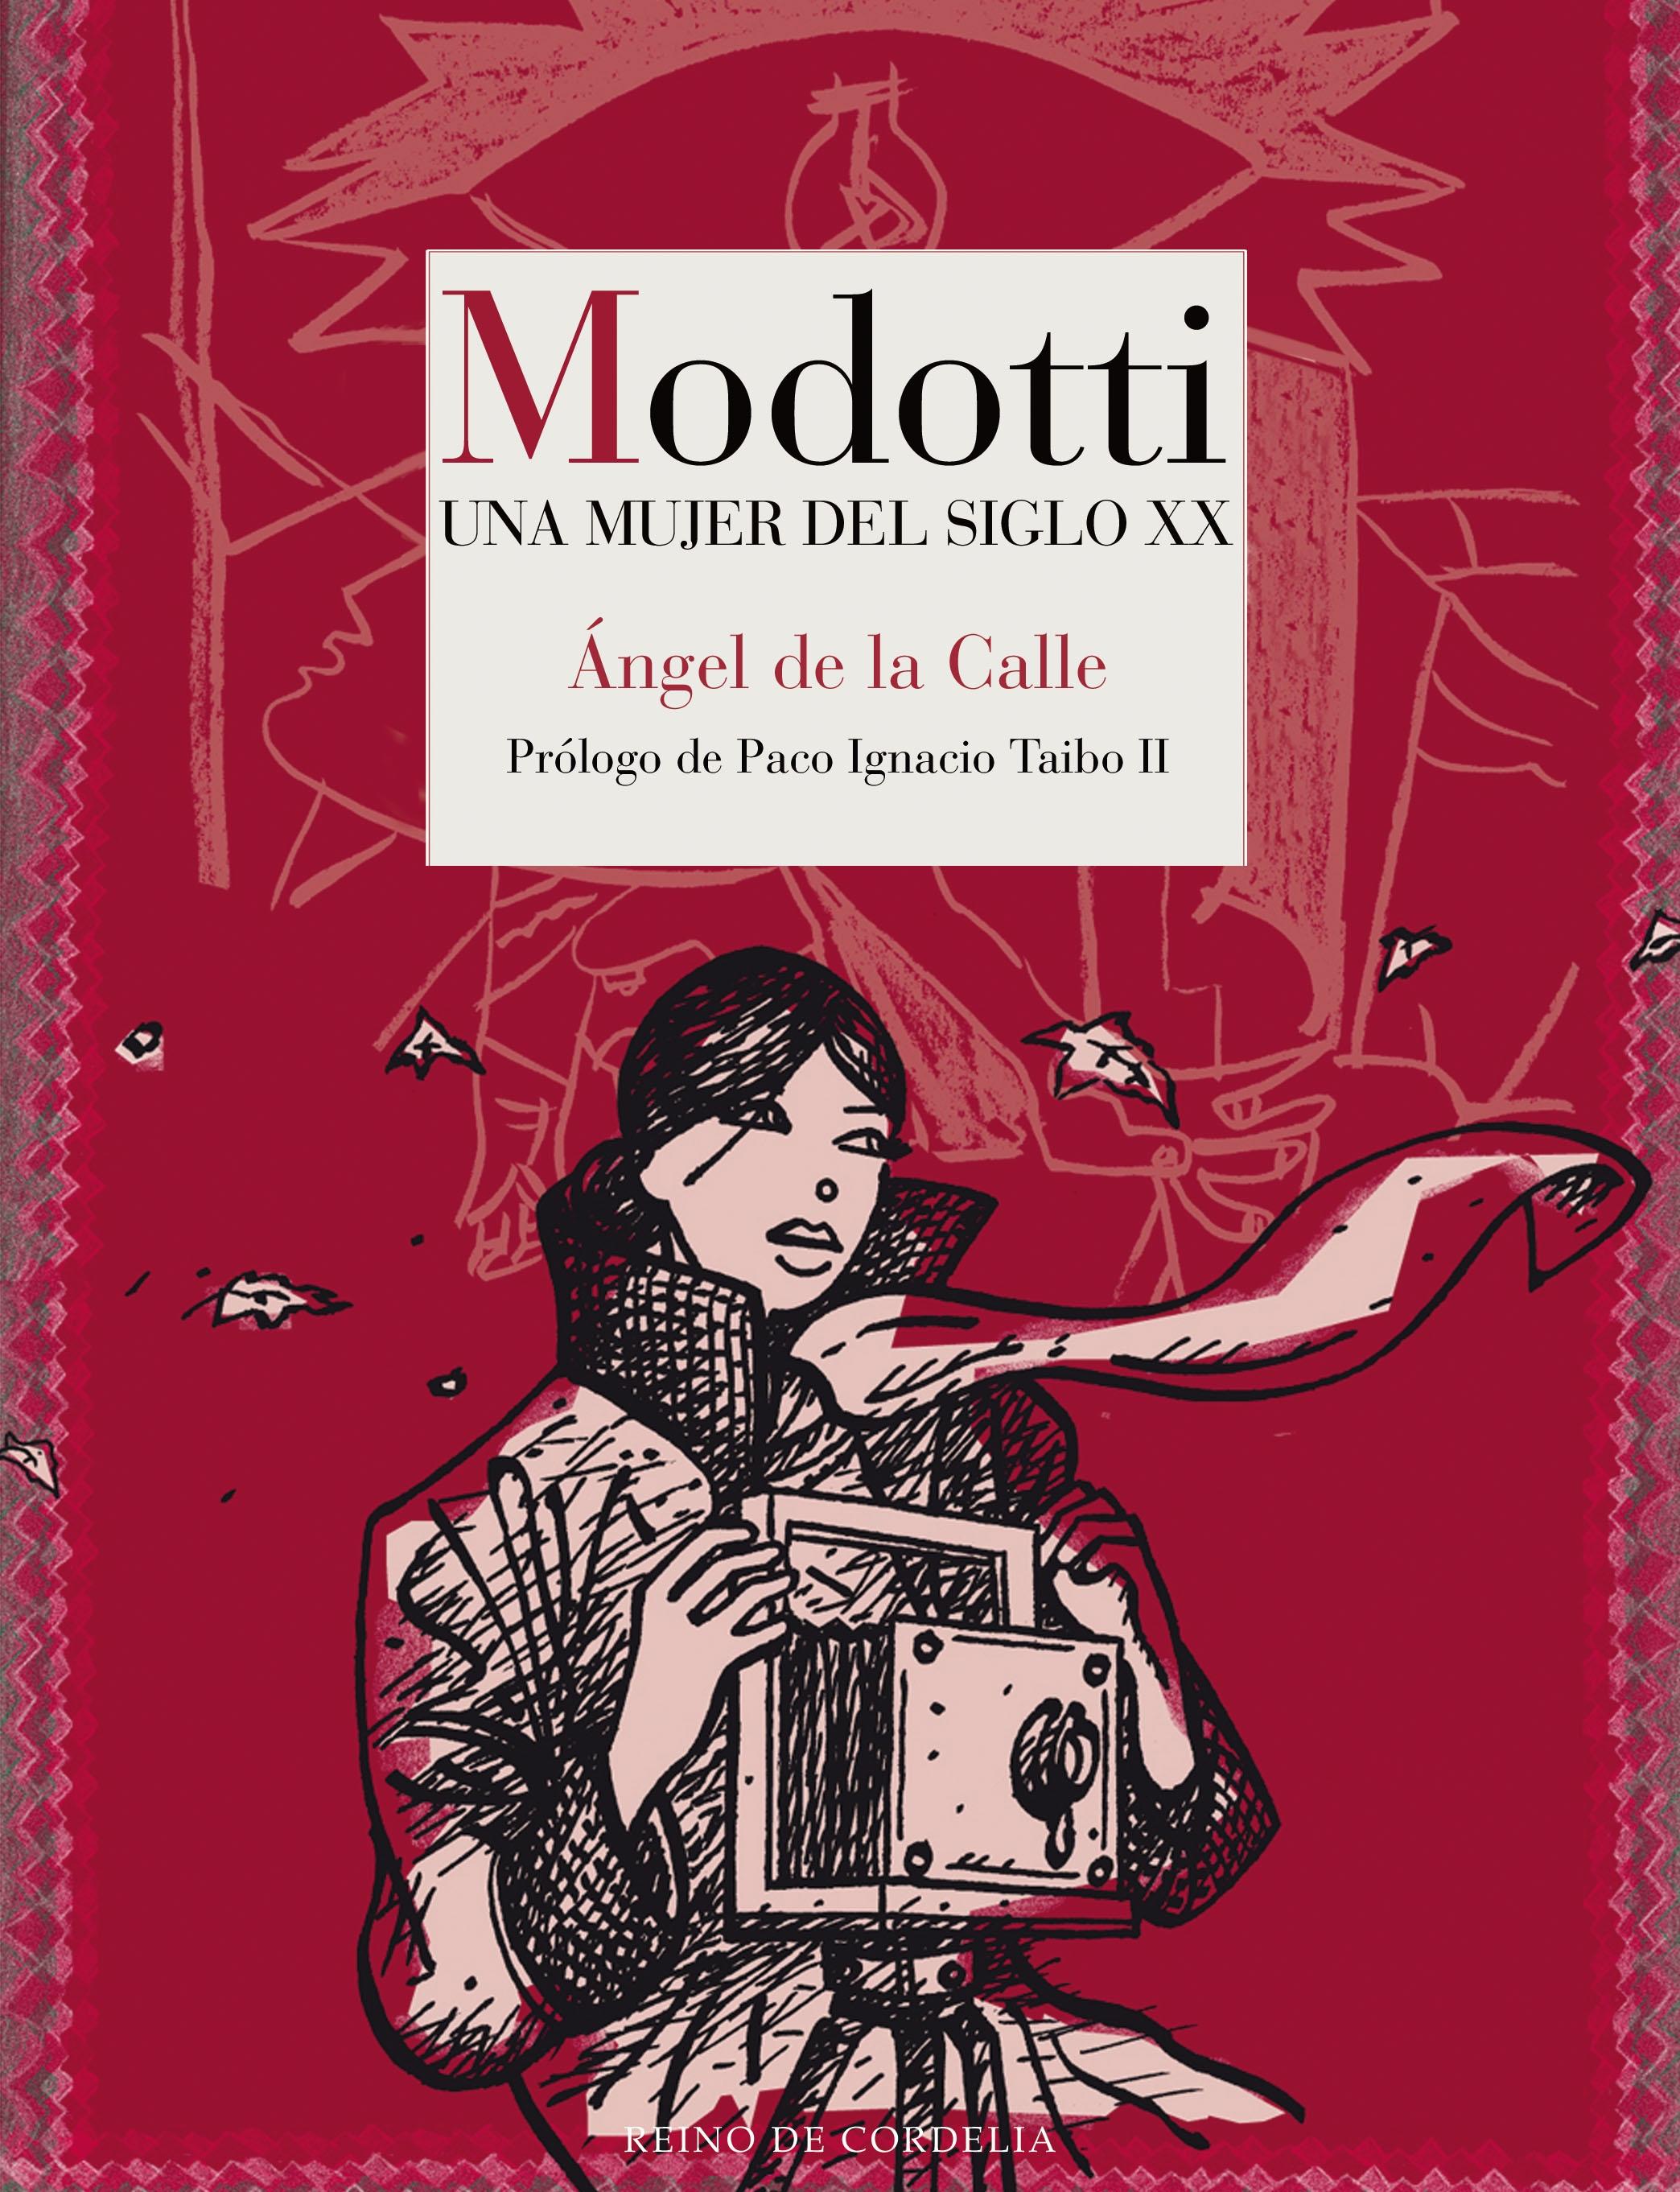 Modotti "Una mujer del siglo XX". 